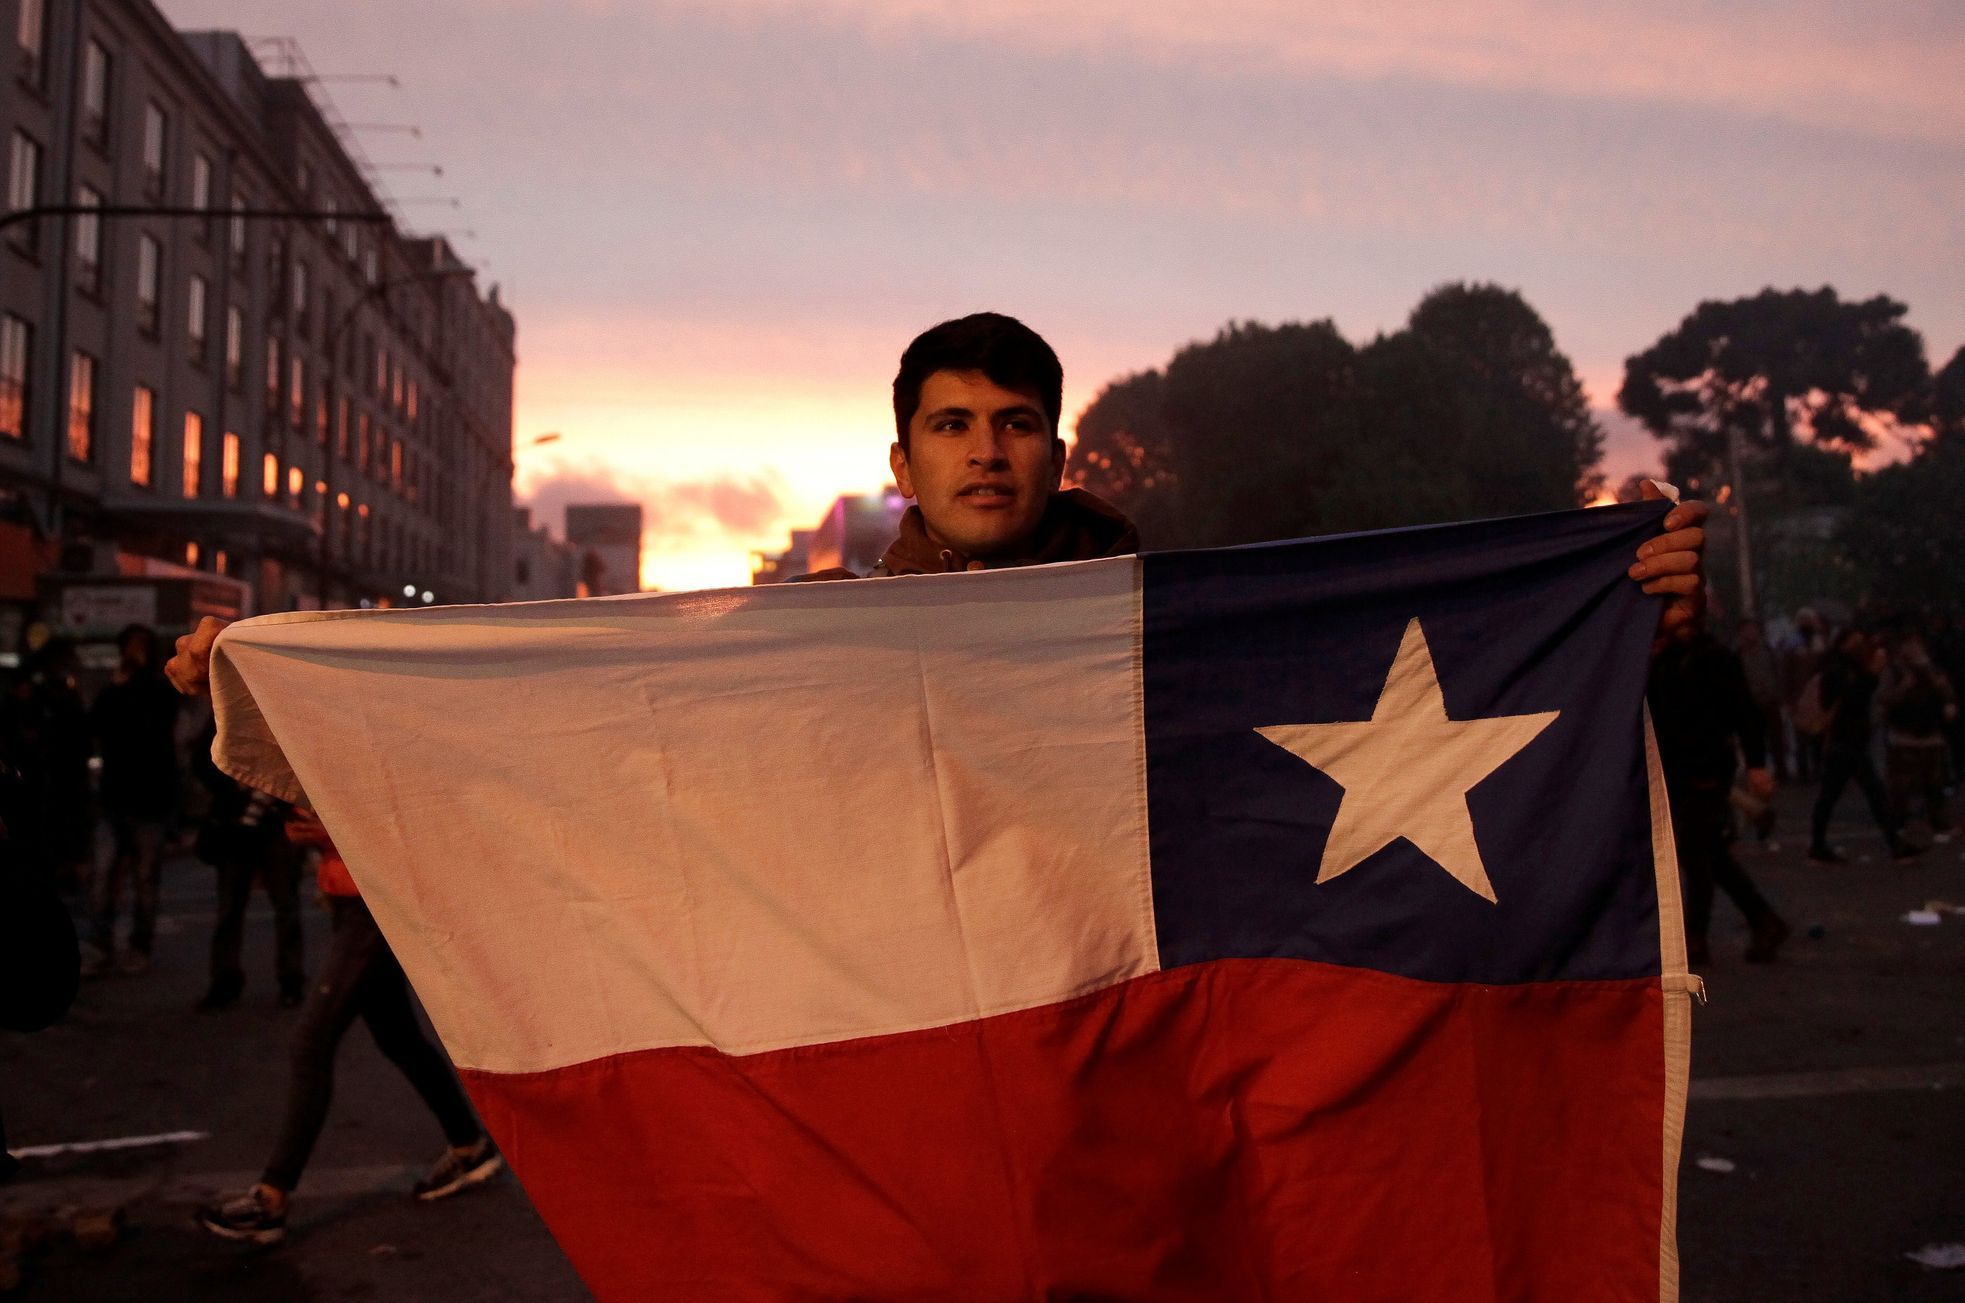 Jeden z demonstrantů v Chile.